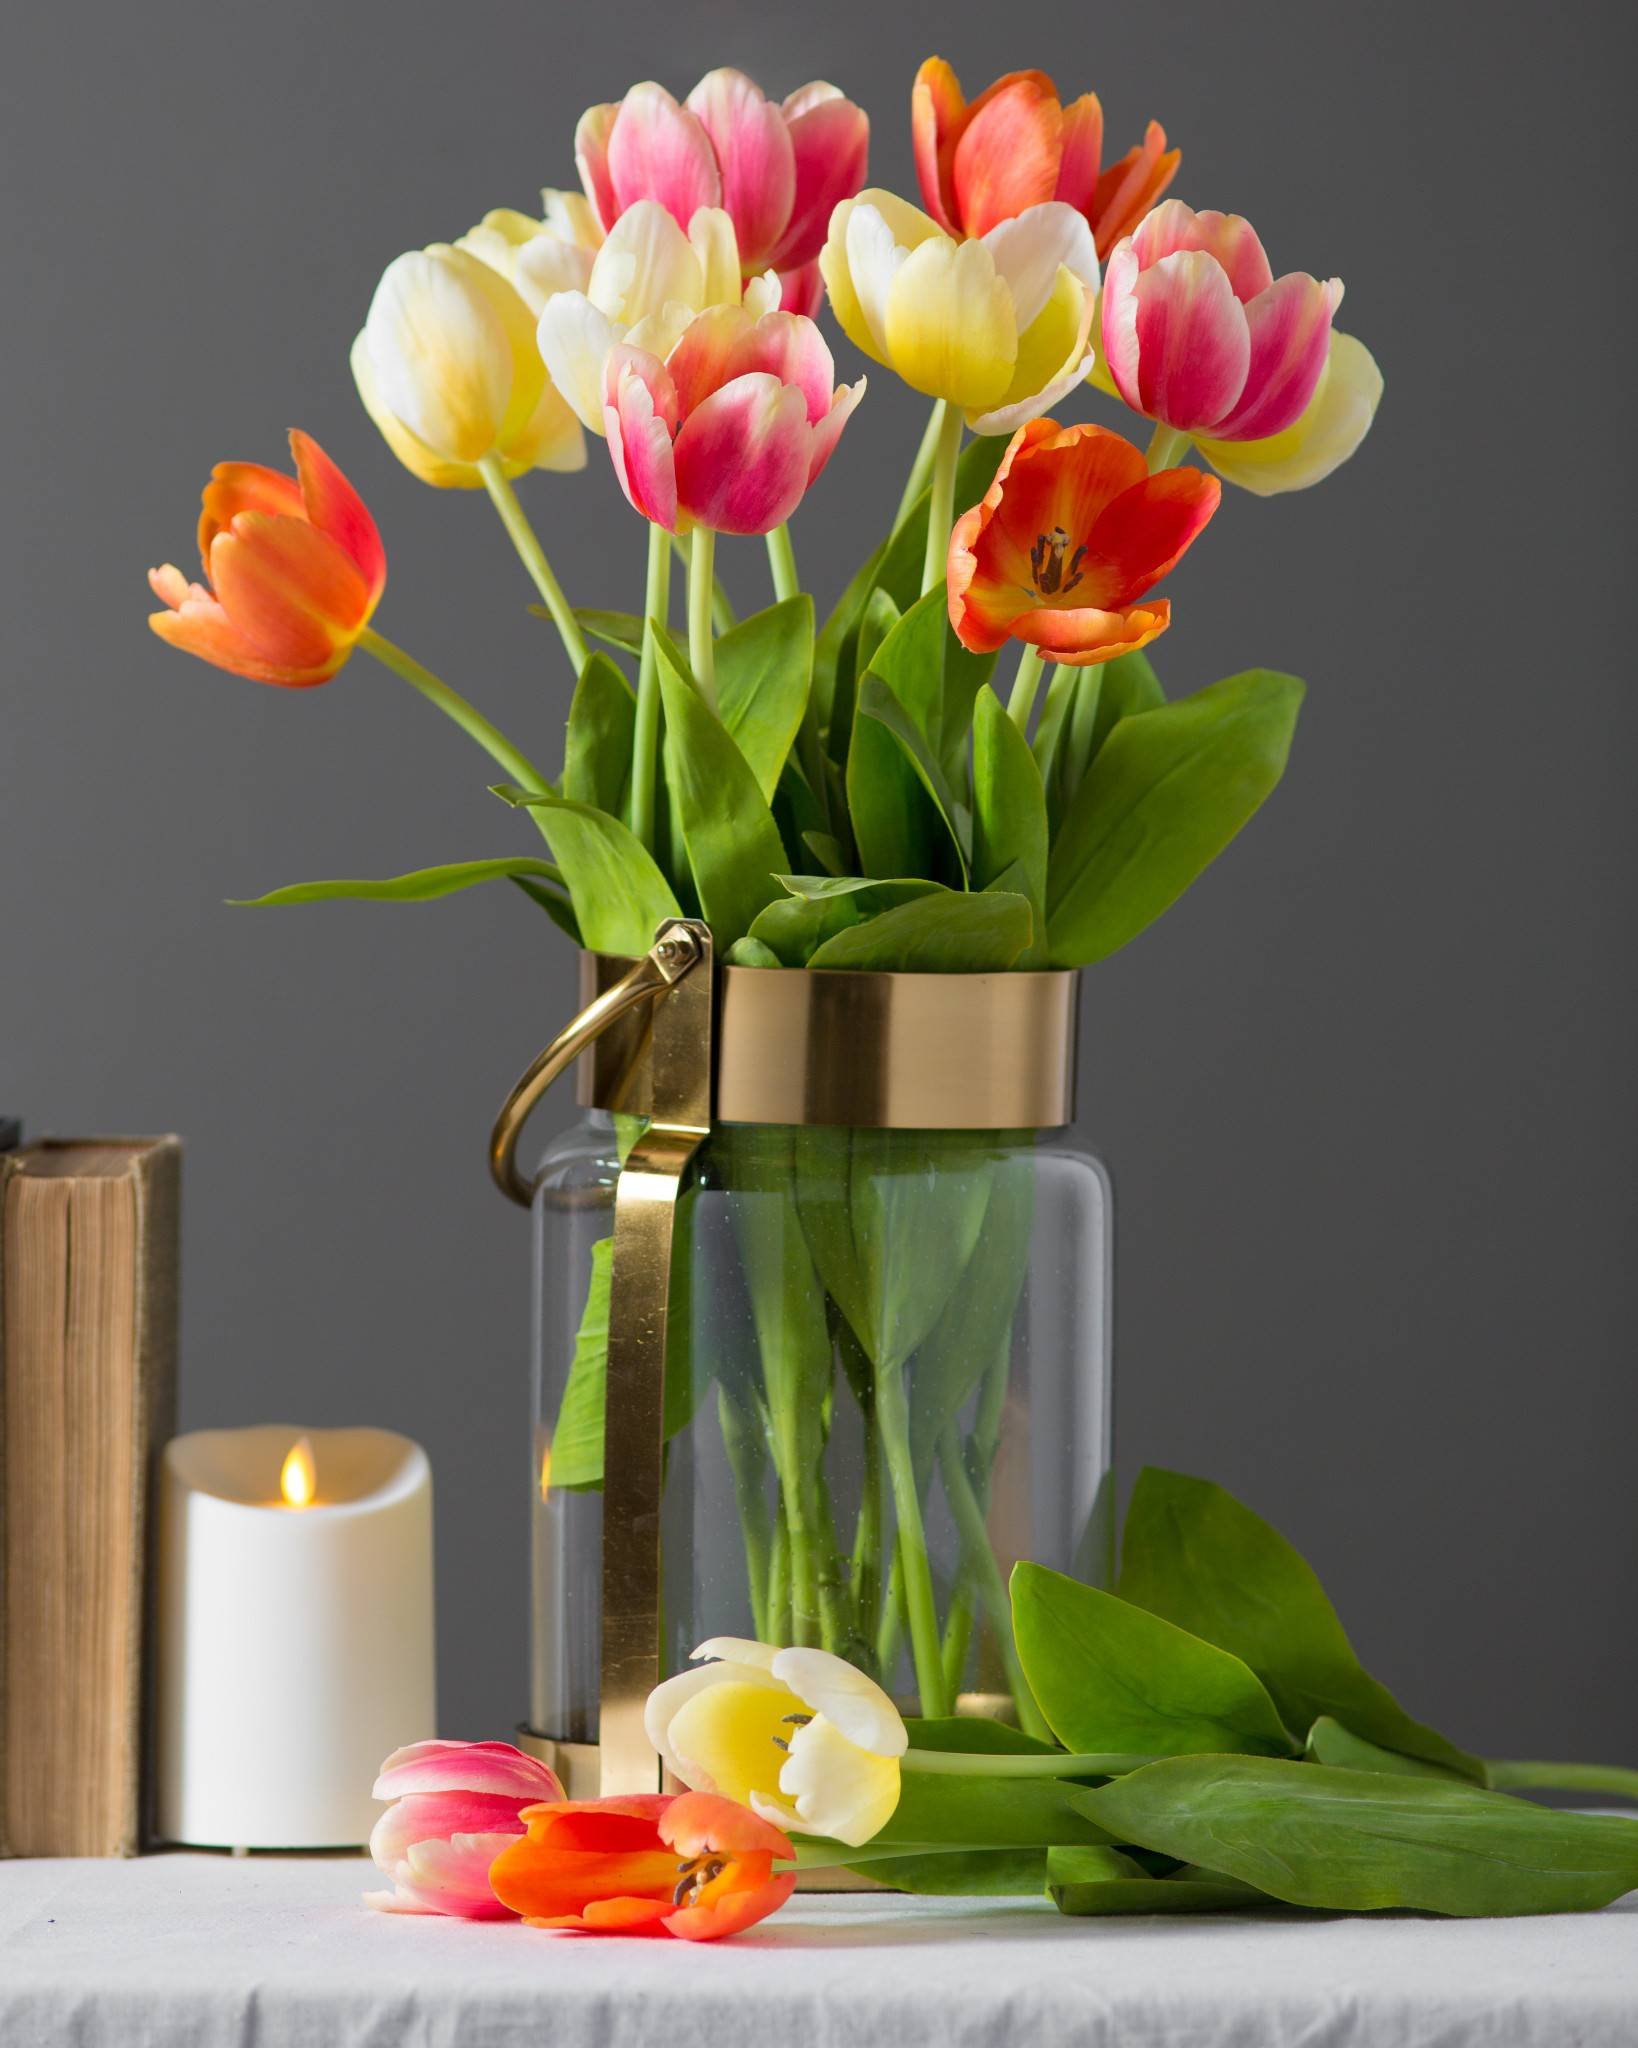 Растут ли тюльпаны в вазе. Тюльпаны в вазе. Тюльпаны в стеклянной вазе. Дульбаны в ваззе. Тюльпаны в вазах.